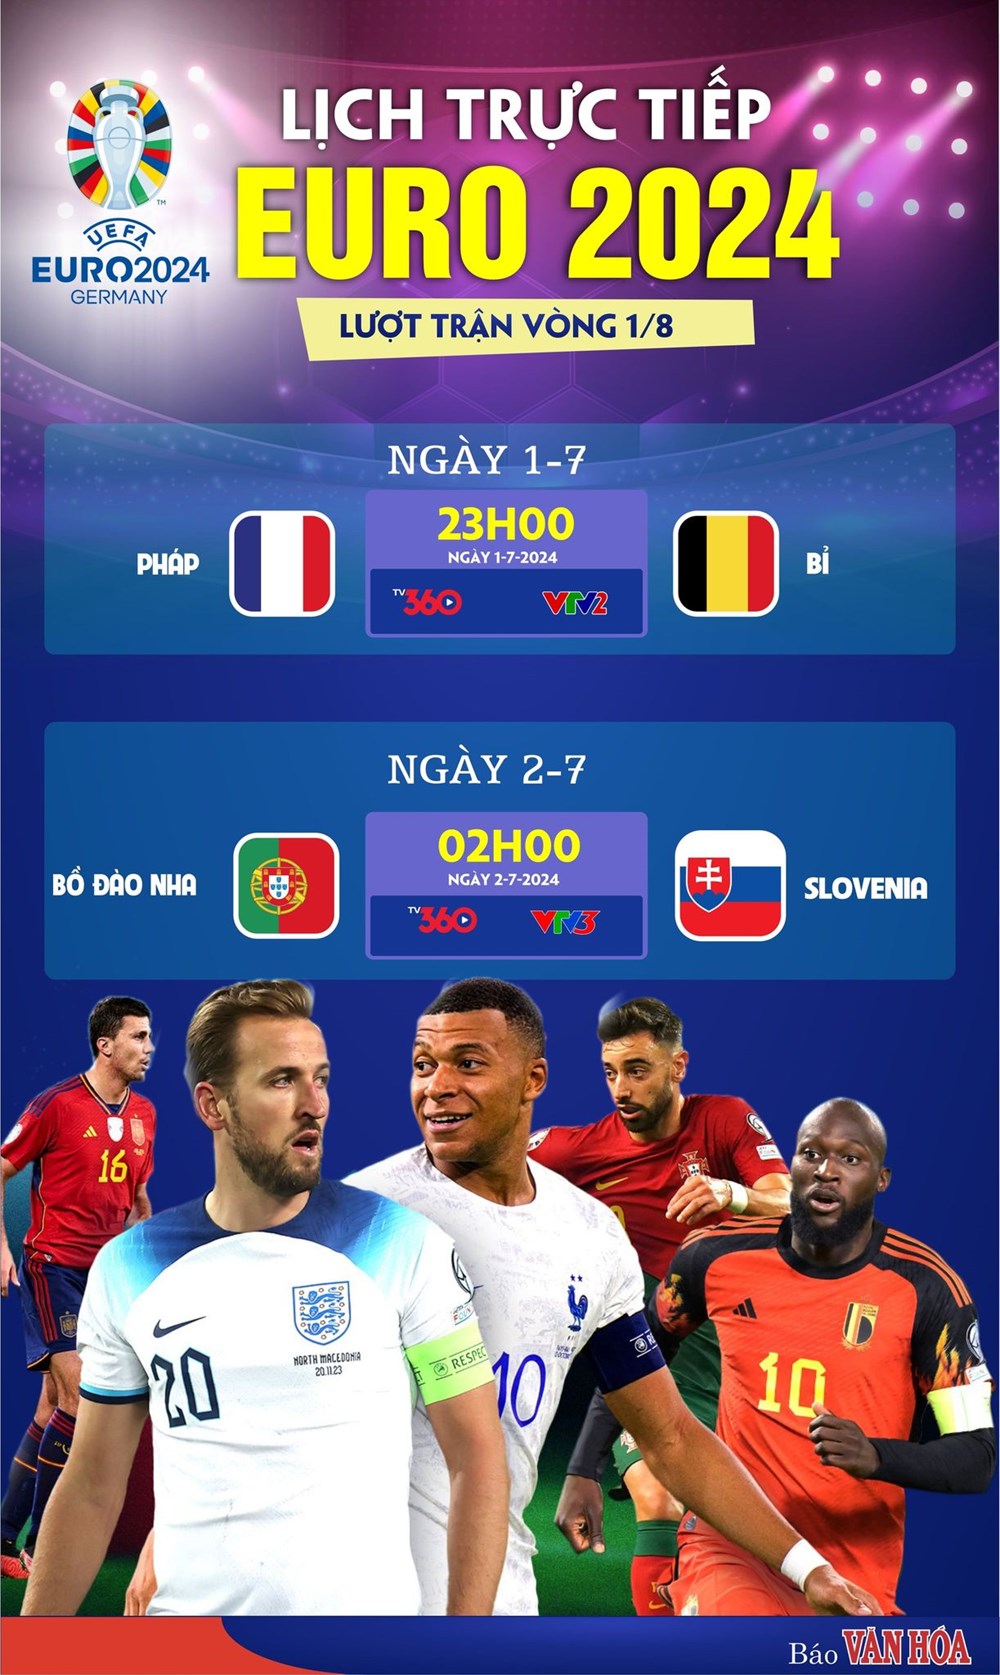 Đại chiến Pháp vs Bỉ, chờ Ronaldo khai nòng cho Bồ Đào Nha - ảnh 1